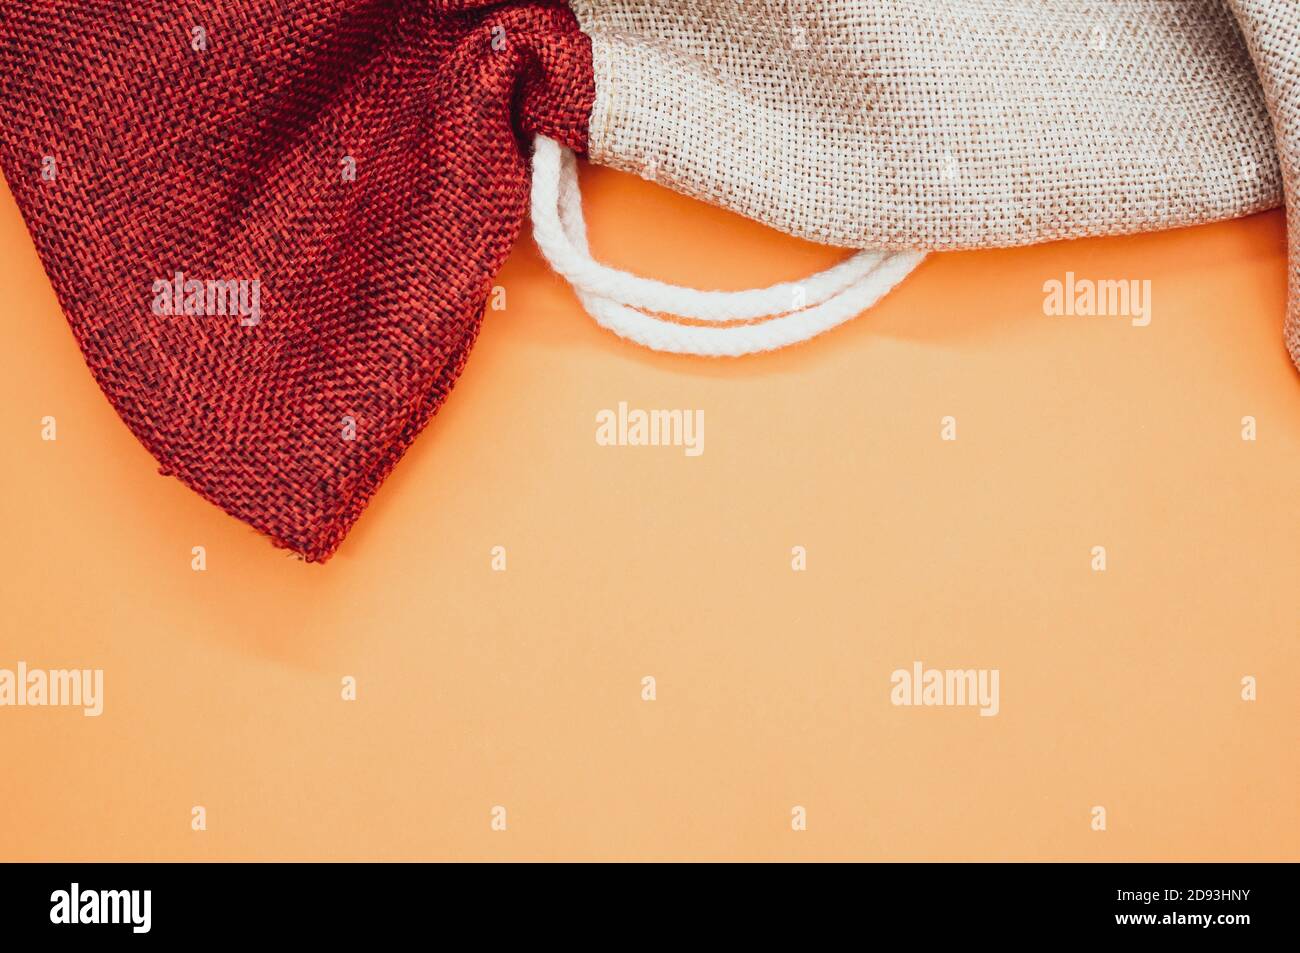 decorative rough textile sacks on an orange background Stock Photo